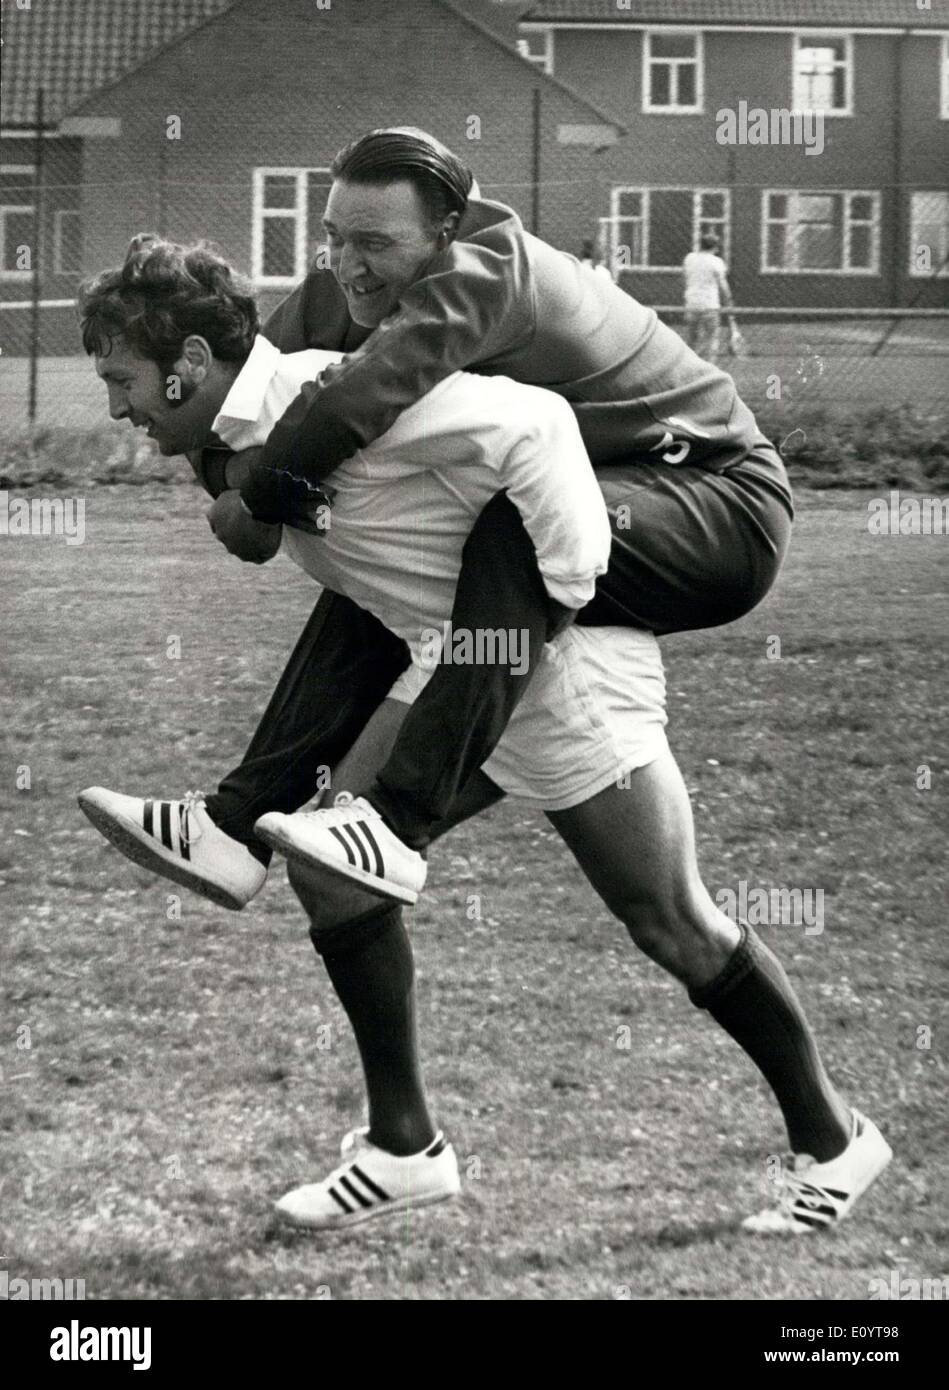 Mai 06, 1971 - L'équipe de rugby des Lions britanniques pour la tournée en Australie et en Nouvelle-Zélande : l'équipe de rugby des Lions Britanniques, qui partent demain pour leur tournée de l'Australie et la Nouvelle-Zélande, sont la formation hier à Eastbourne. Photo montre la longe est le capitaine John Dawes, Dr D. Smith, hier au cours des séance de formation à Eastbourne. Banque D'Images